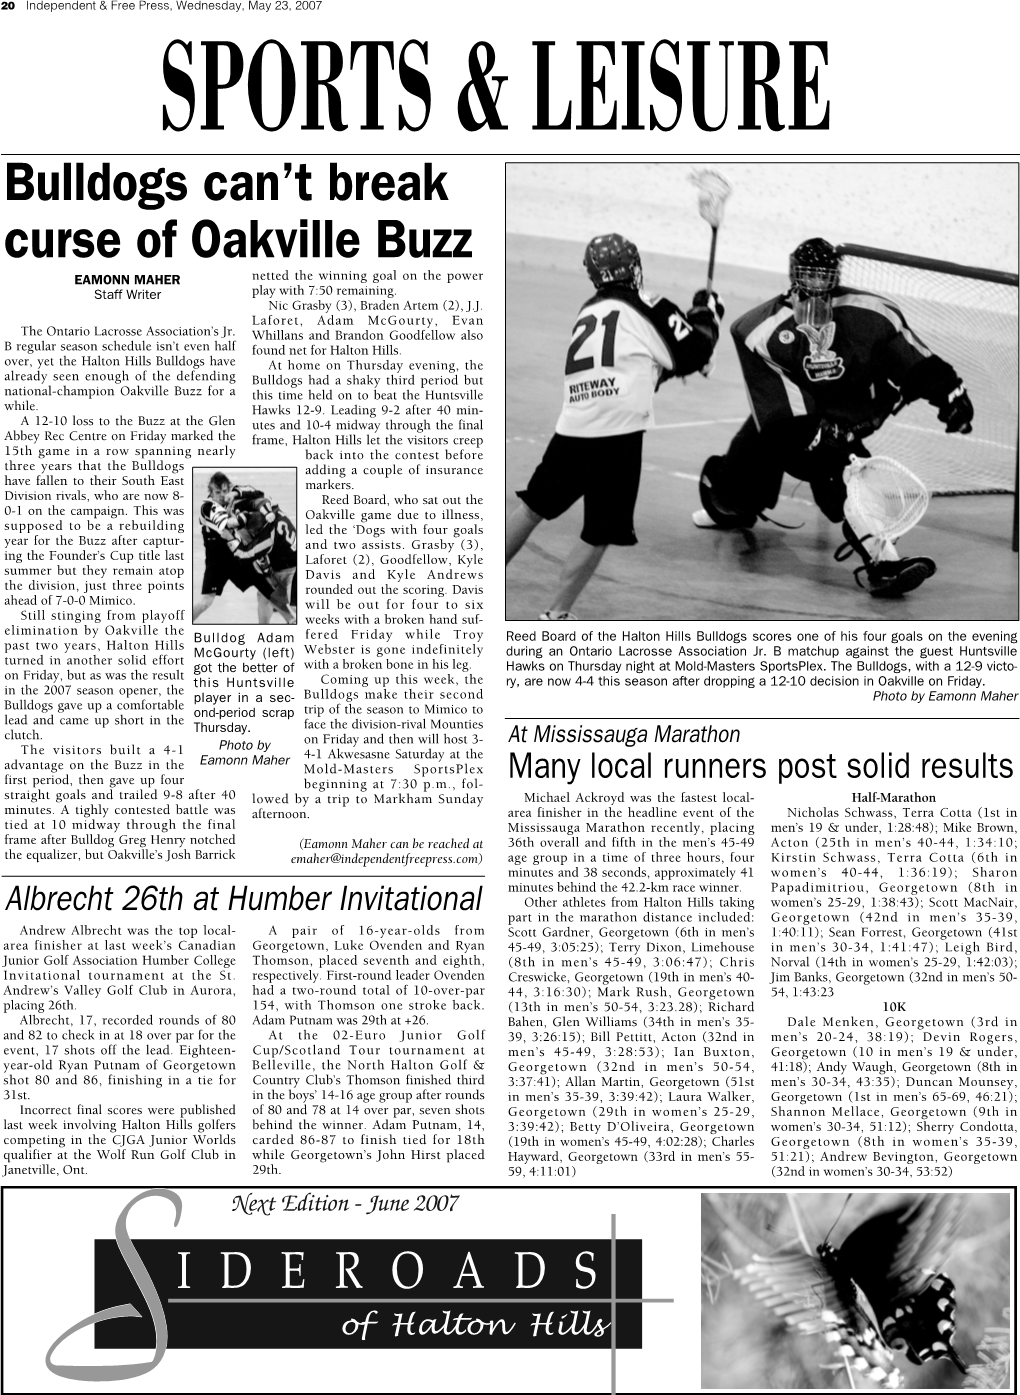 Bulldogs Can't Break Curse of Oakville Buzz